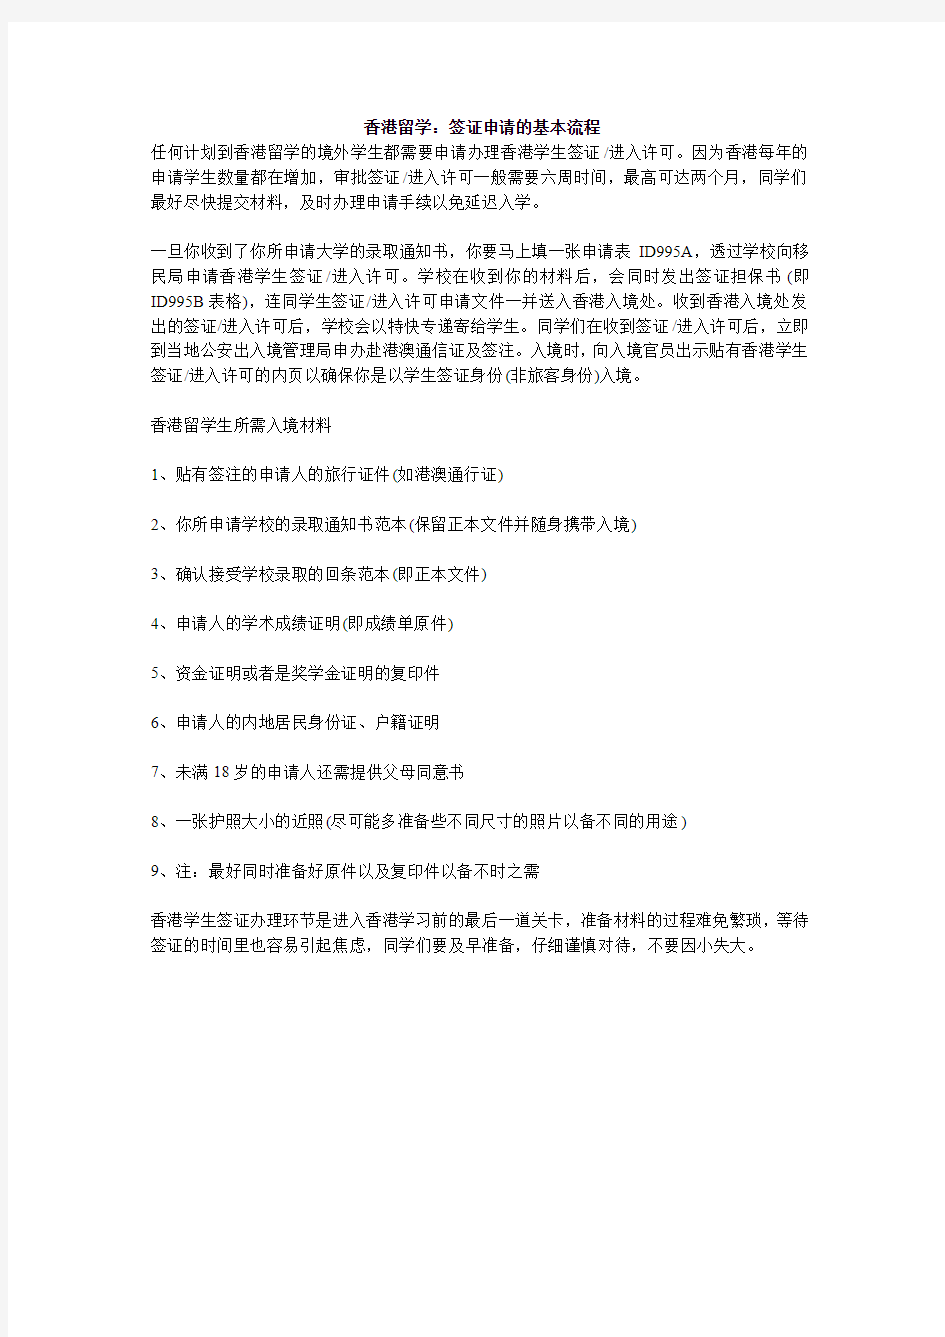 香港留学签证申请的基本流程